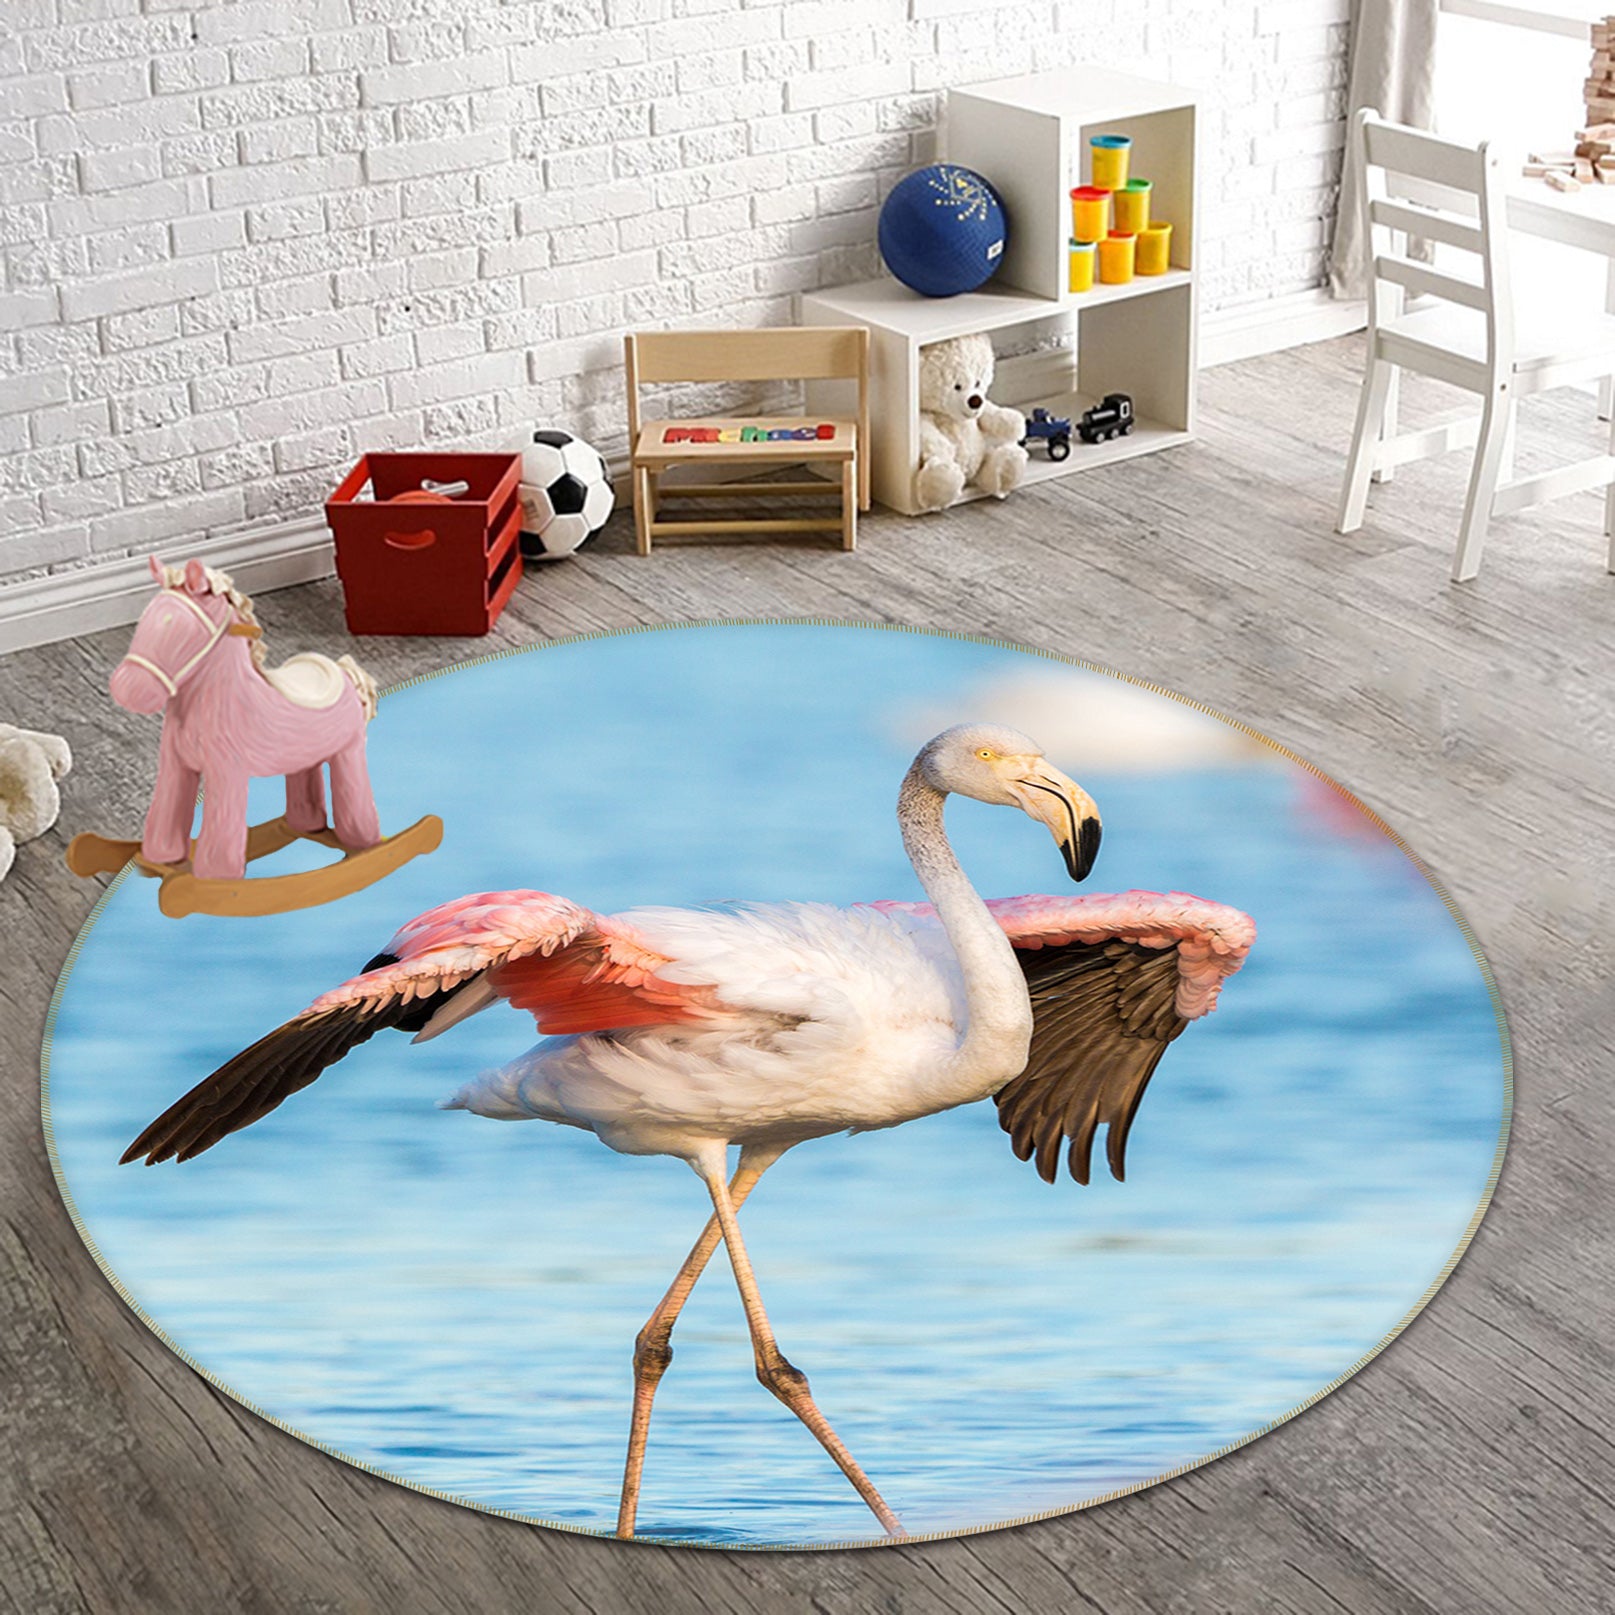 3D Flamingo 82217 Animal Round Non Slip Rug Mat